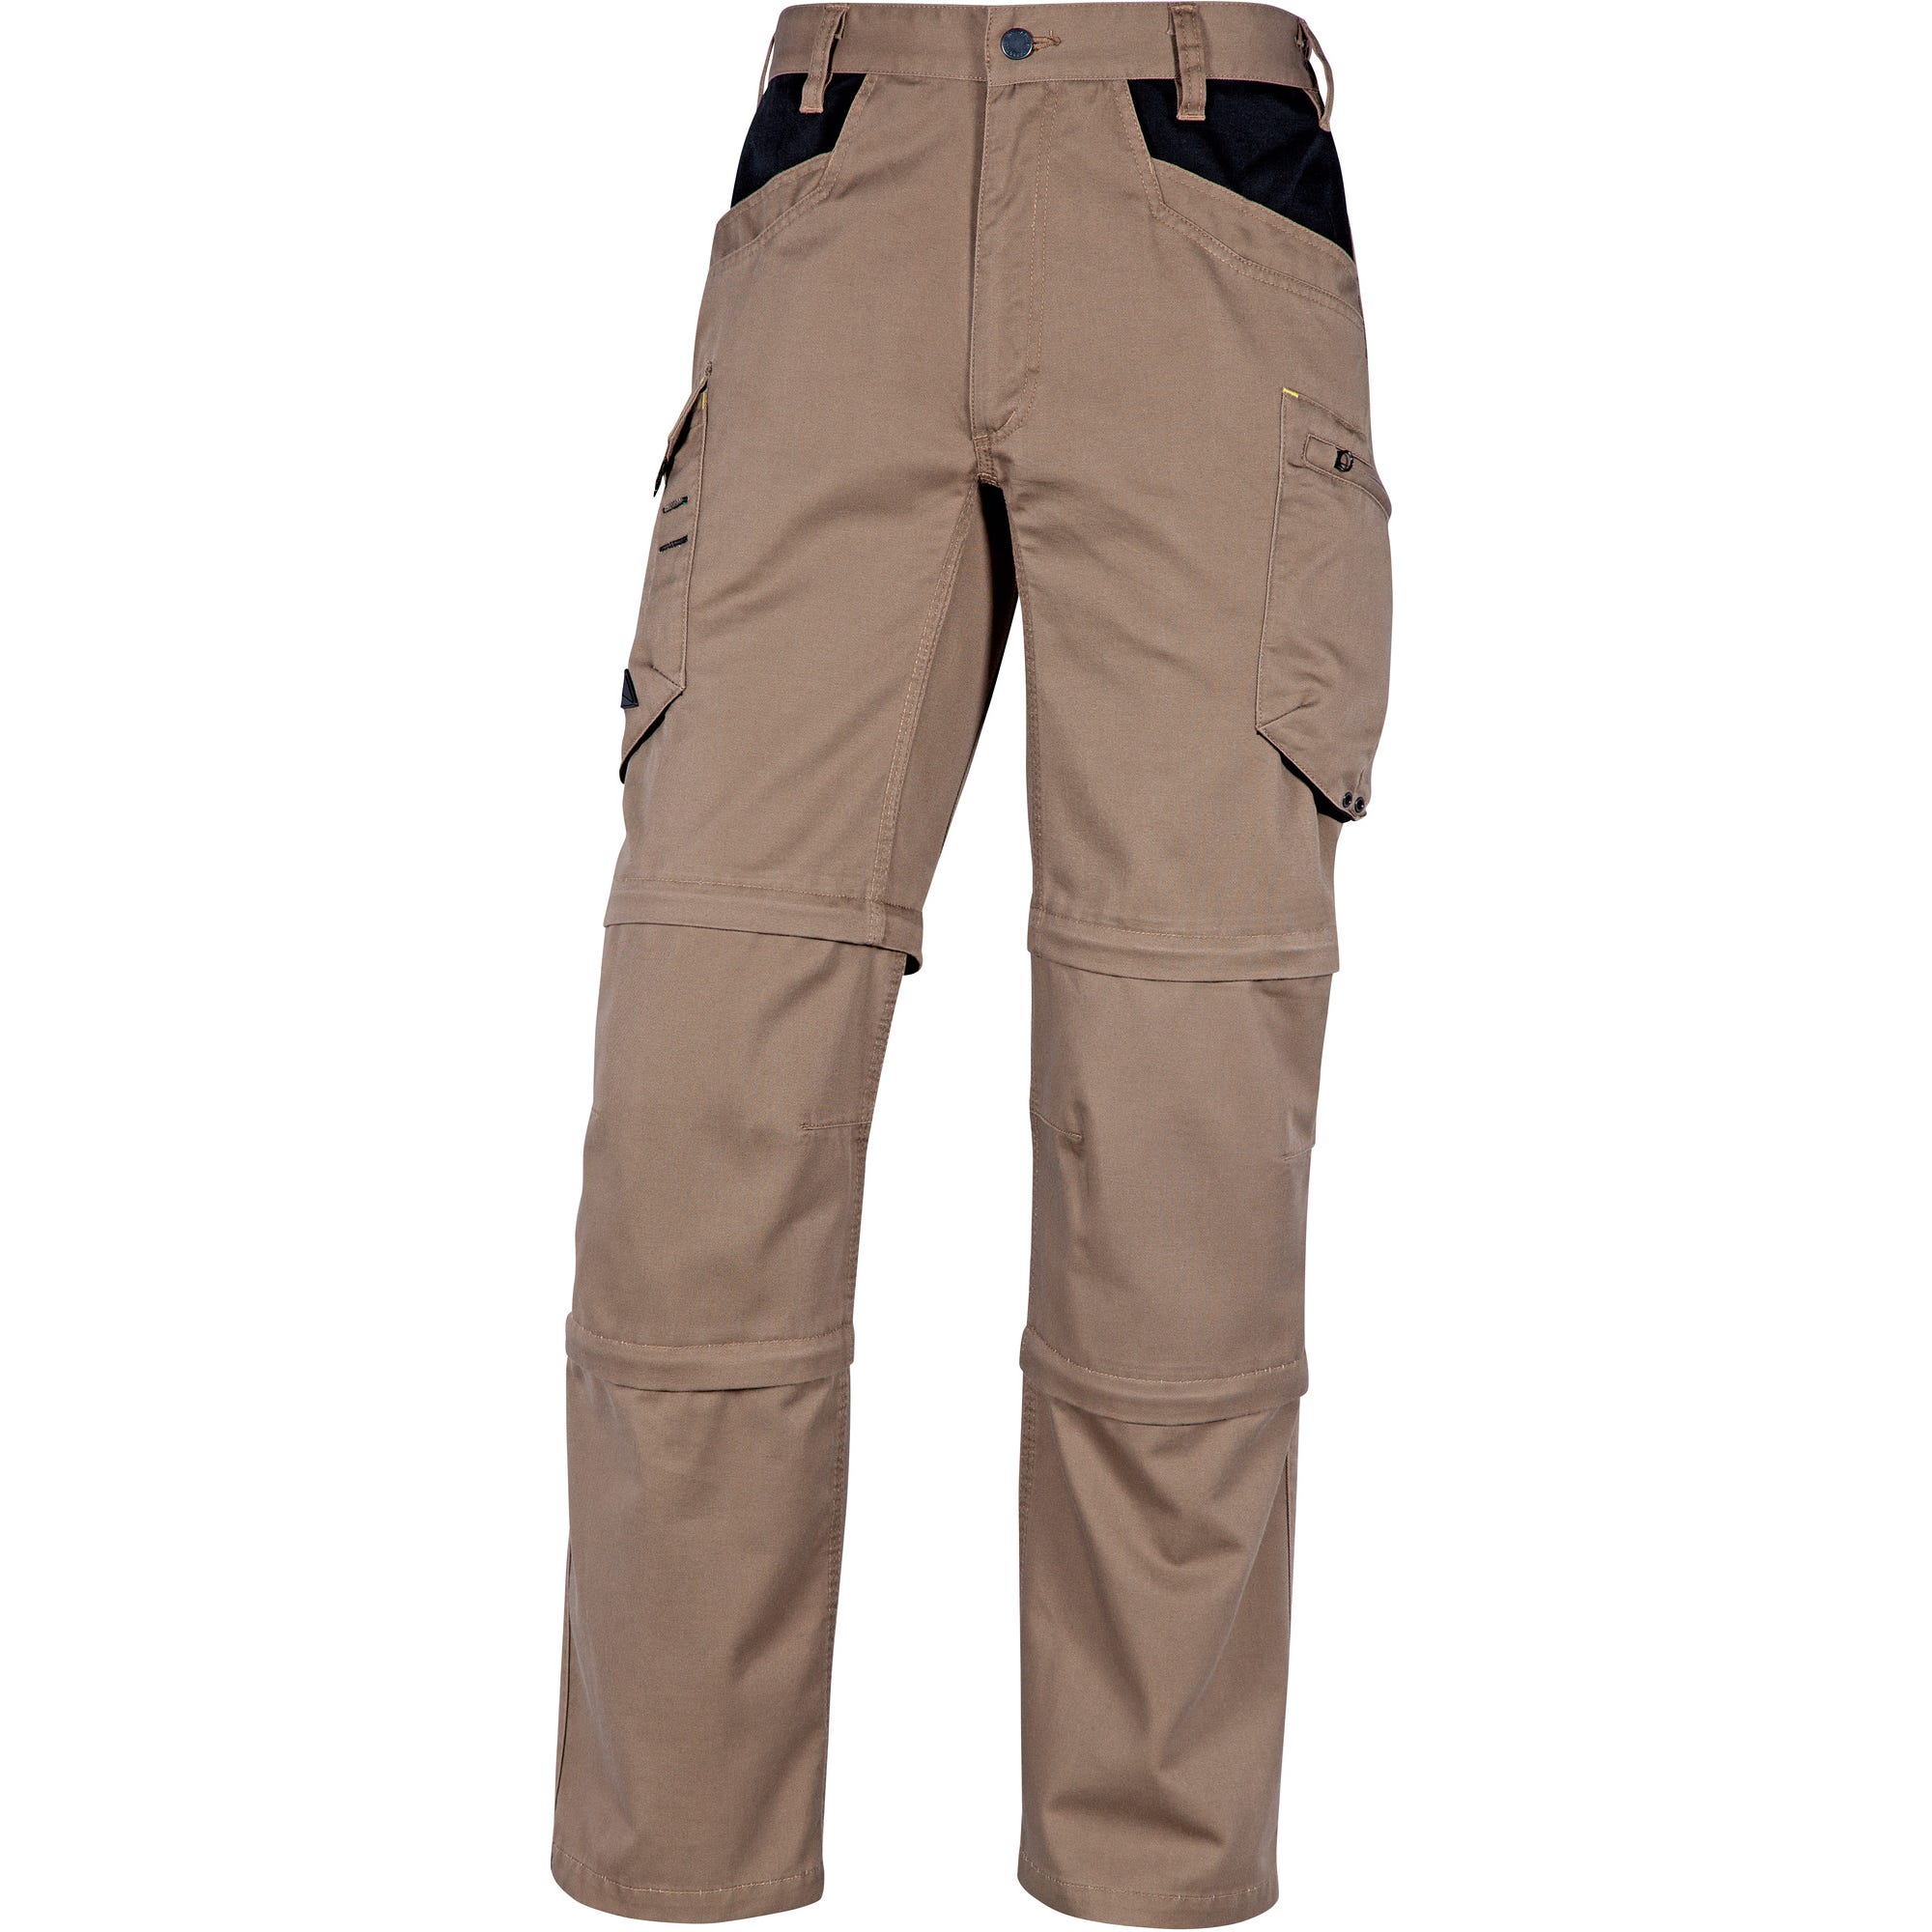 Pantalon de travail beige T.L mach5 - DELTA PLUS 2